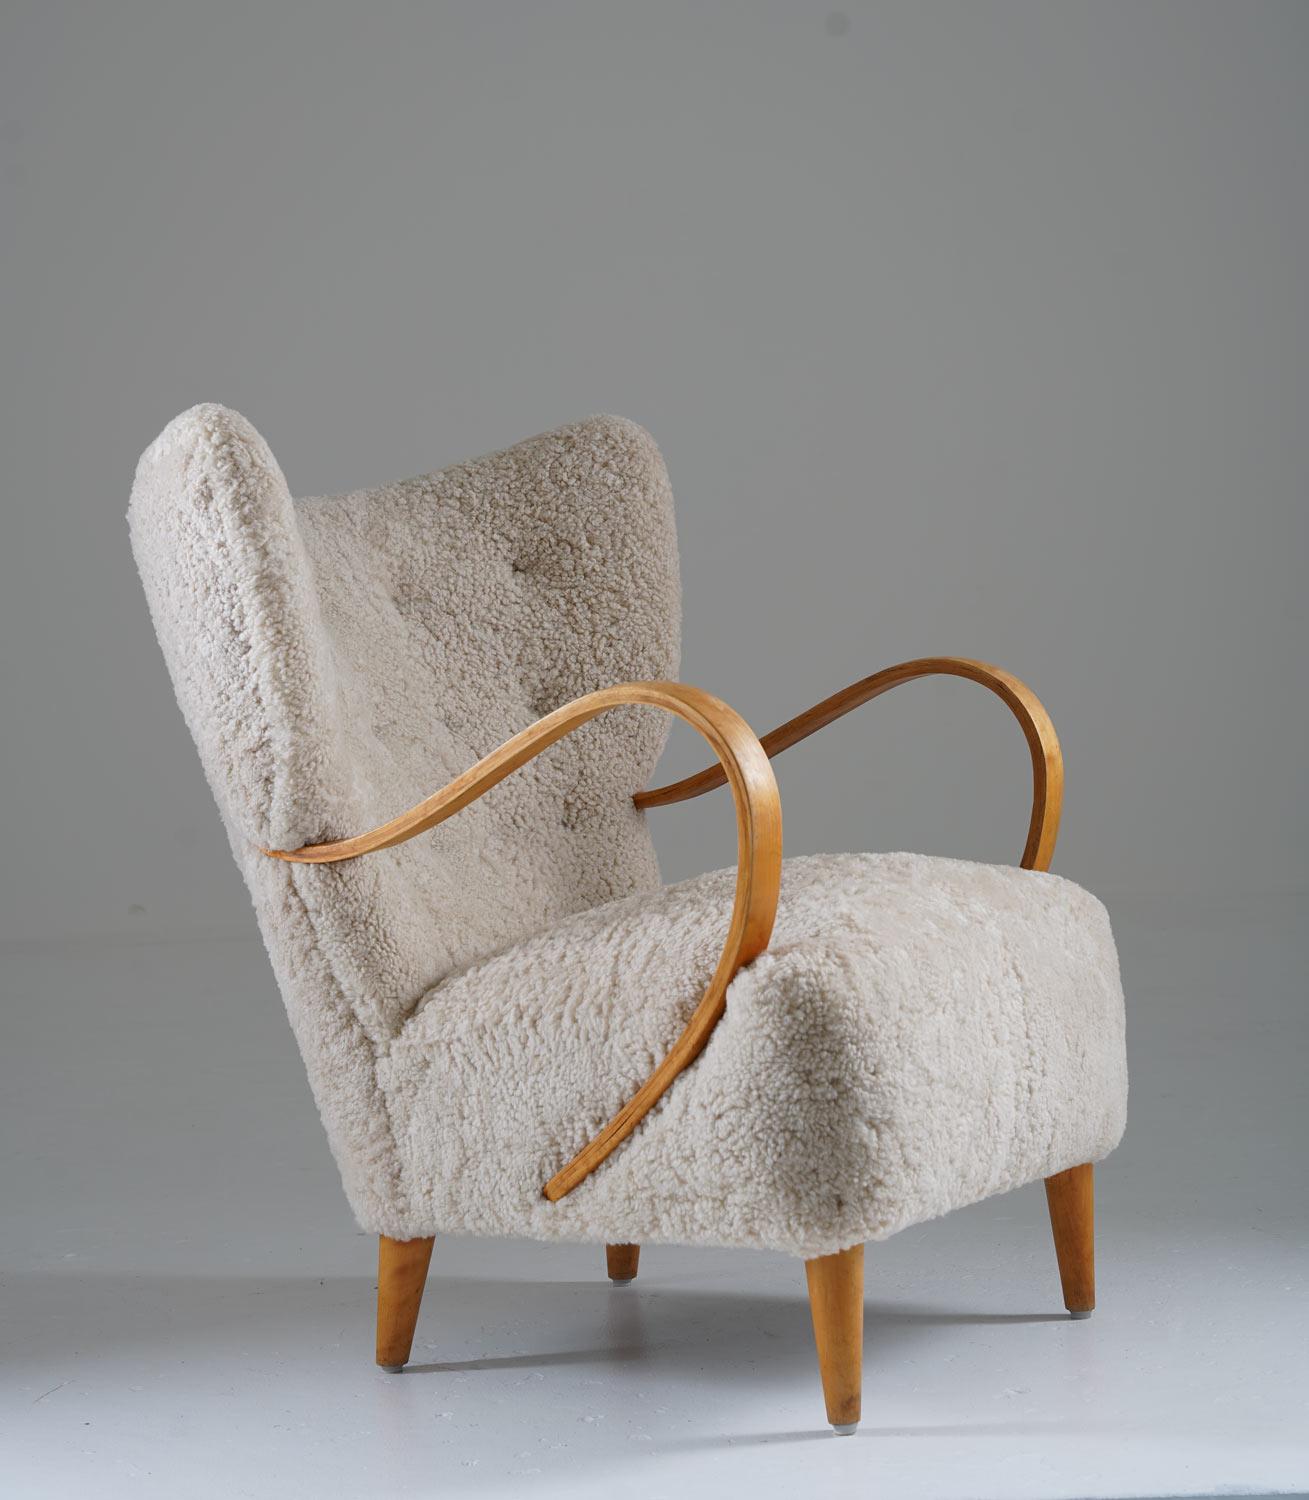 Magnifique chaise de salon à dossier ailé, produite en Suède vers 1950.
Avec un design simple et organique et des proportions harmonieuses, cette chaise attirerait tous les regards dans une maison moderne. 

Condit : Très bon état vintage. Légers